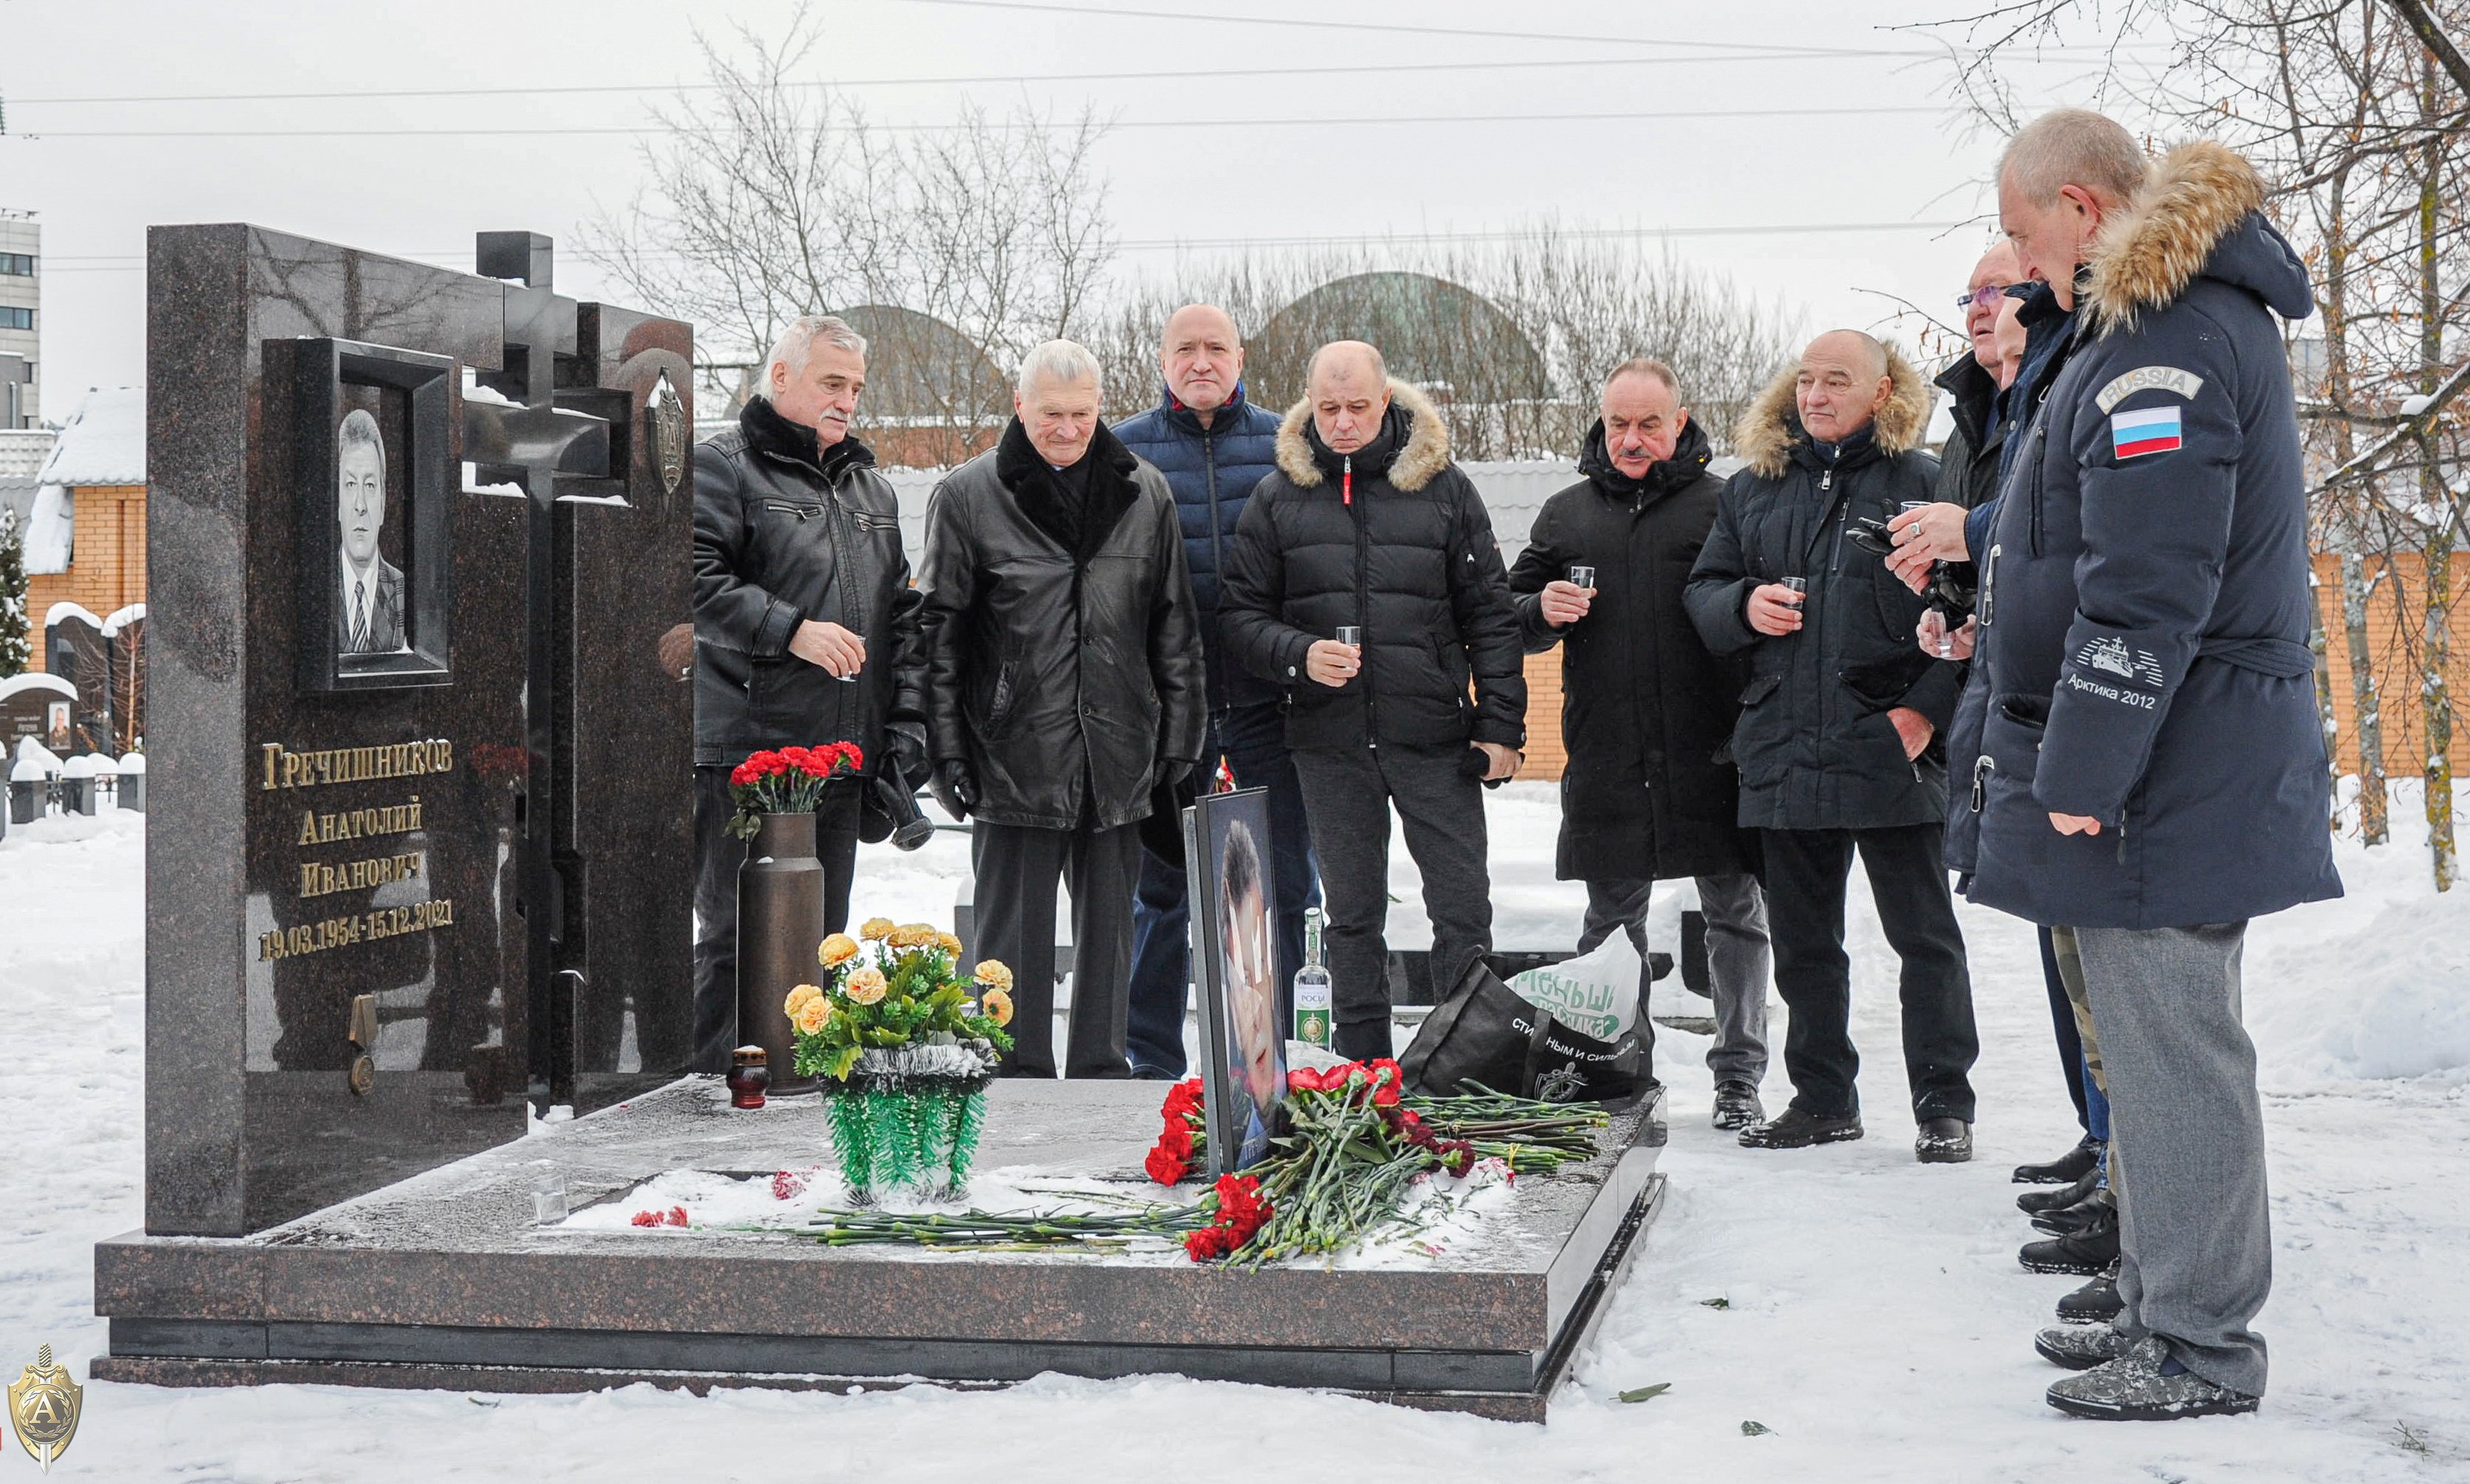 Анатолий Иванович похоронен на Троекуровском кладбище. Рядом погребены его сослуживцы, среди которых легендарный Виктор Блинов, погибший в Сирии